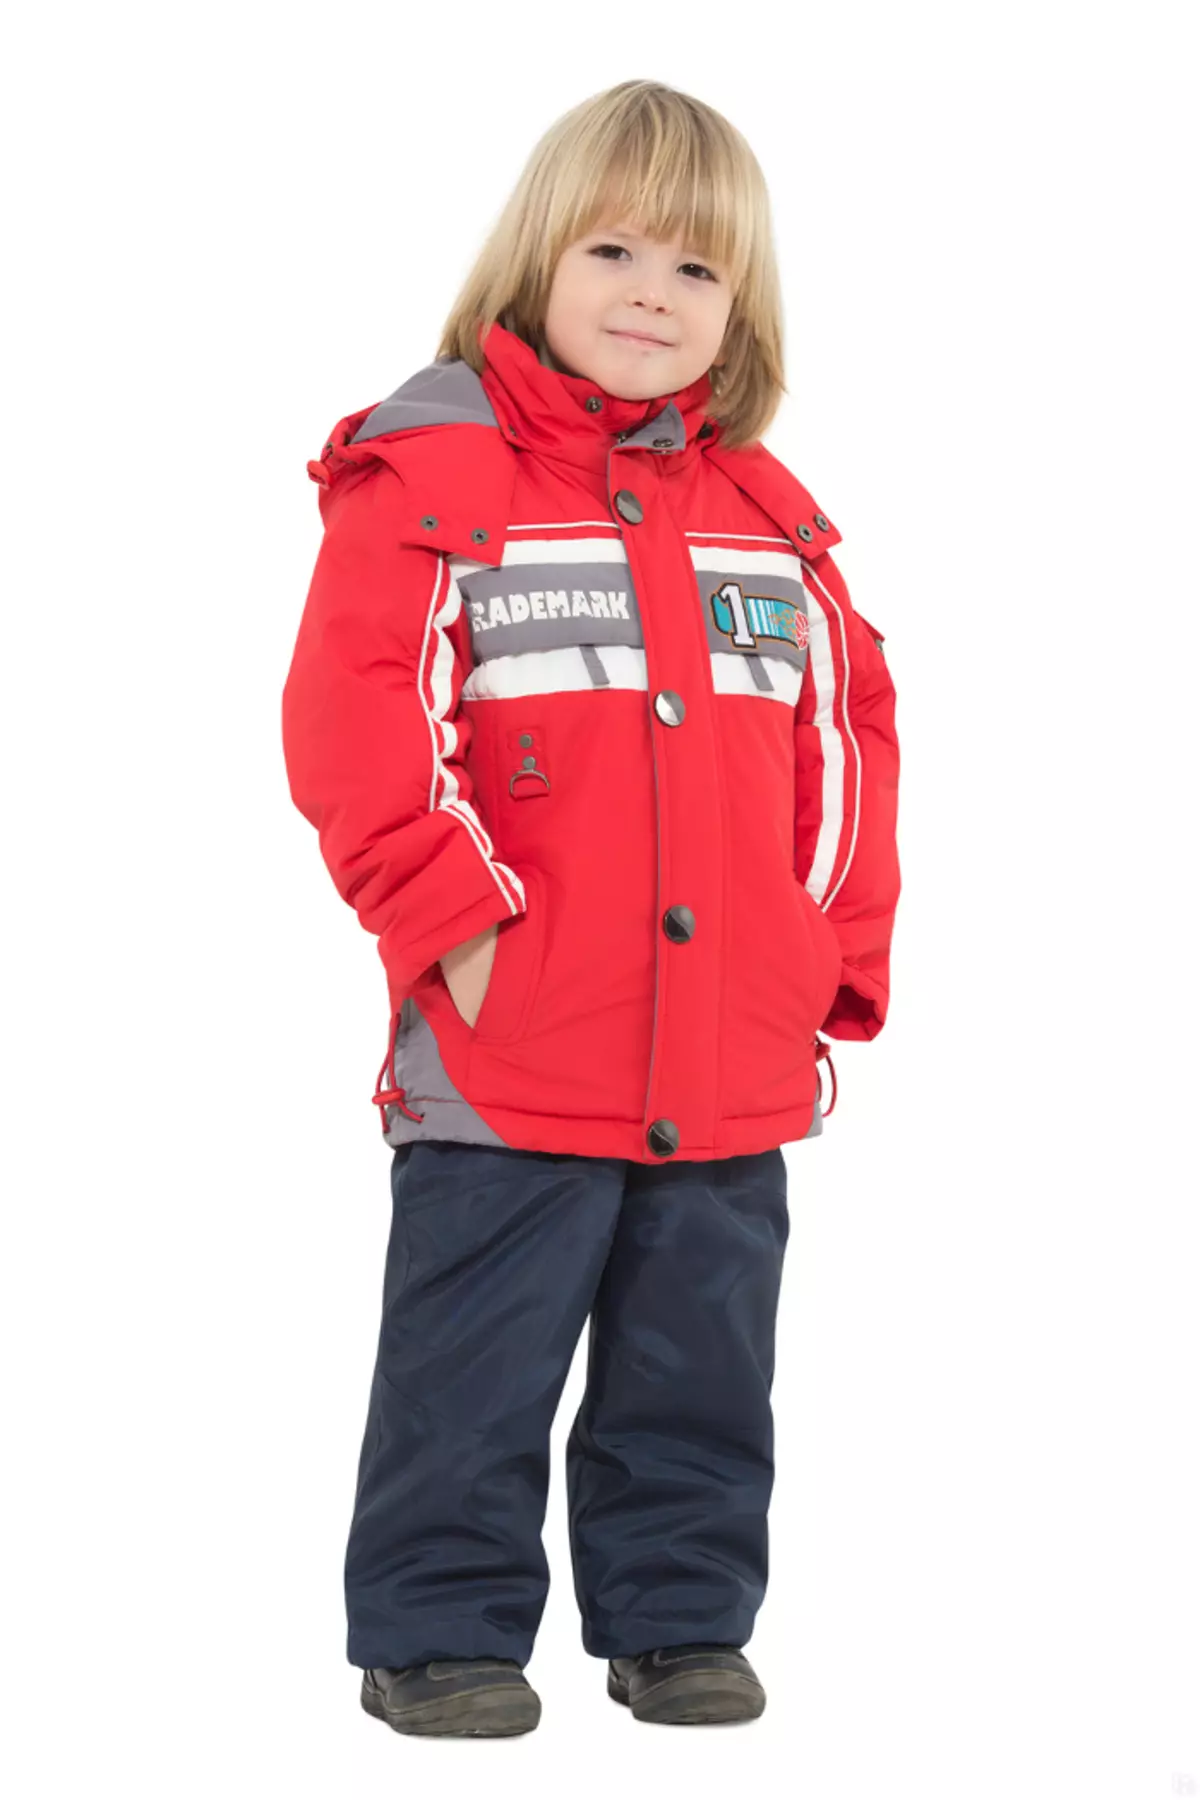 Bilemi (38 φωτογραφίες): Παιδικά ρούχα, χειμερινά κιτ και φόρμες, αδιάβροχο και σακάκια, κριτικές μάρκας 3802_33